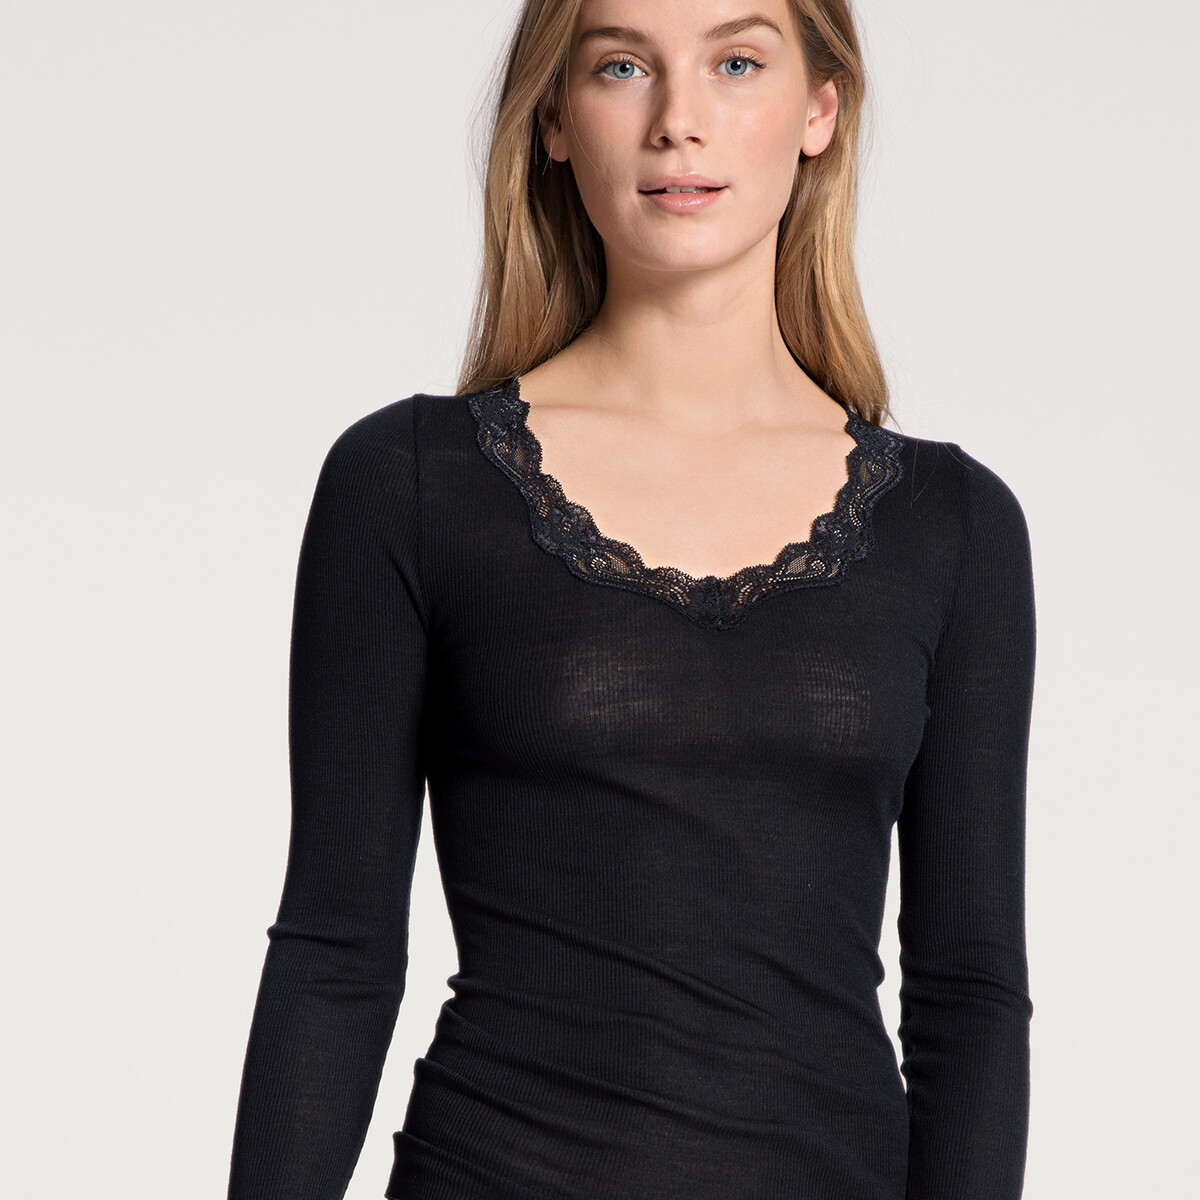 Calida Bluse, Farbe: Schwarz, Größe: M, Damen von Calida